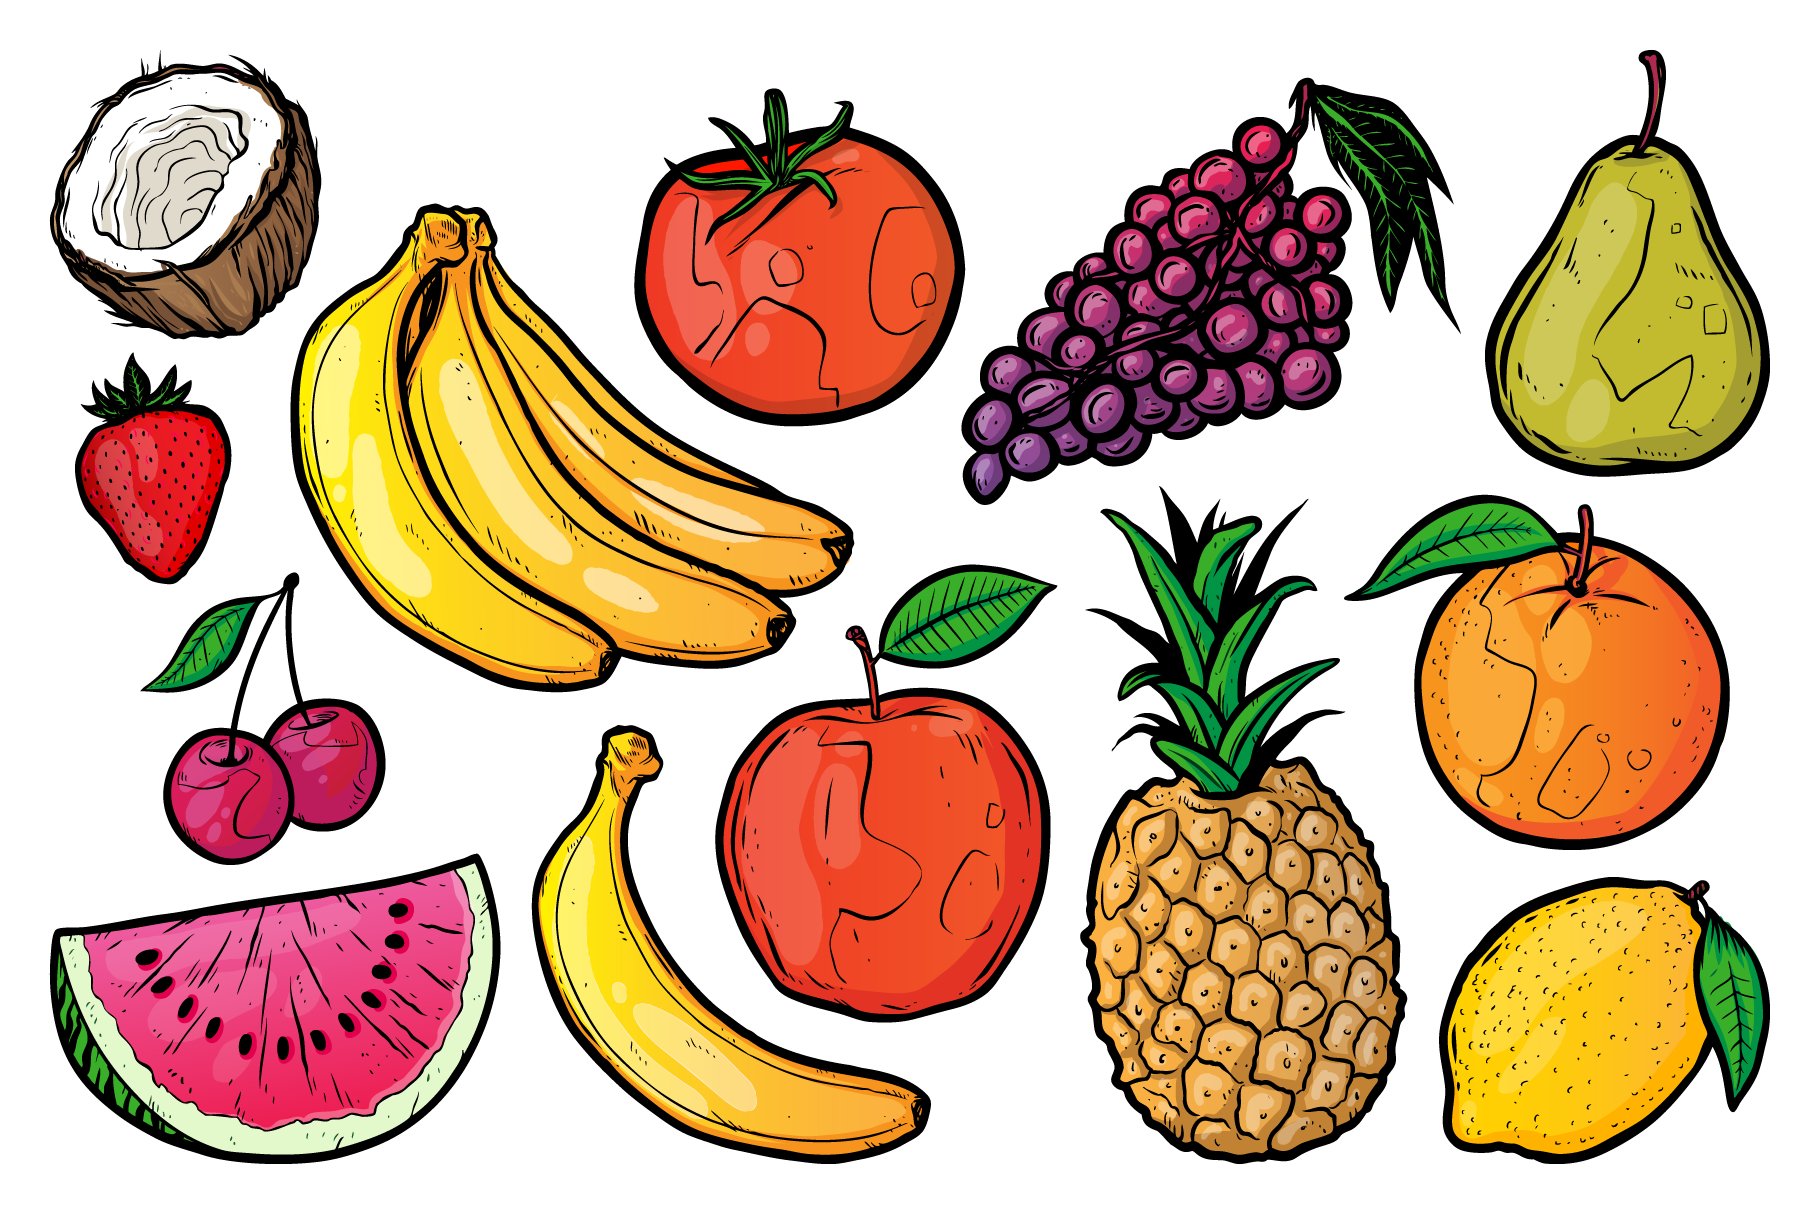 Fruit Basket Drawing Images - Free Download on Freepik